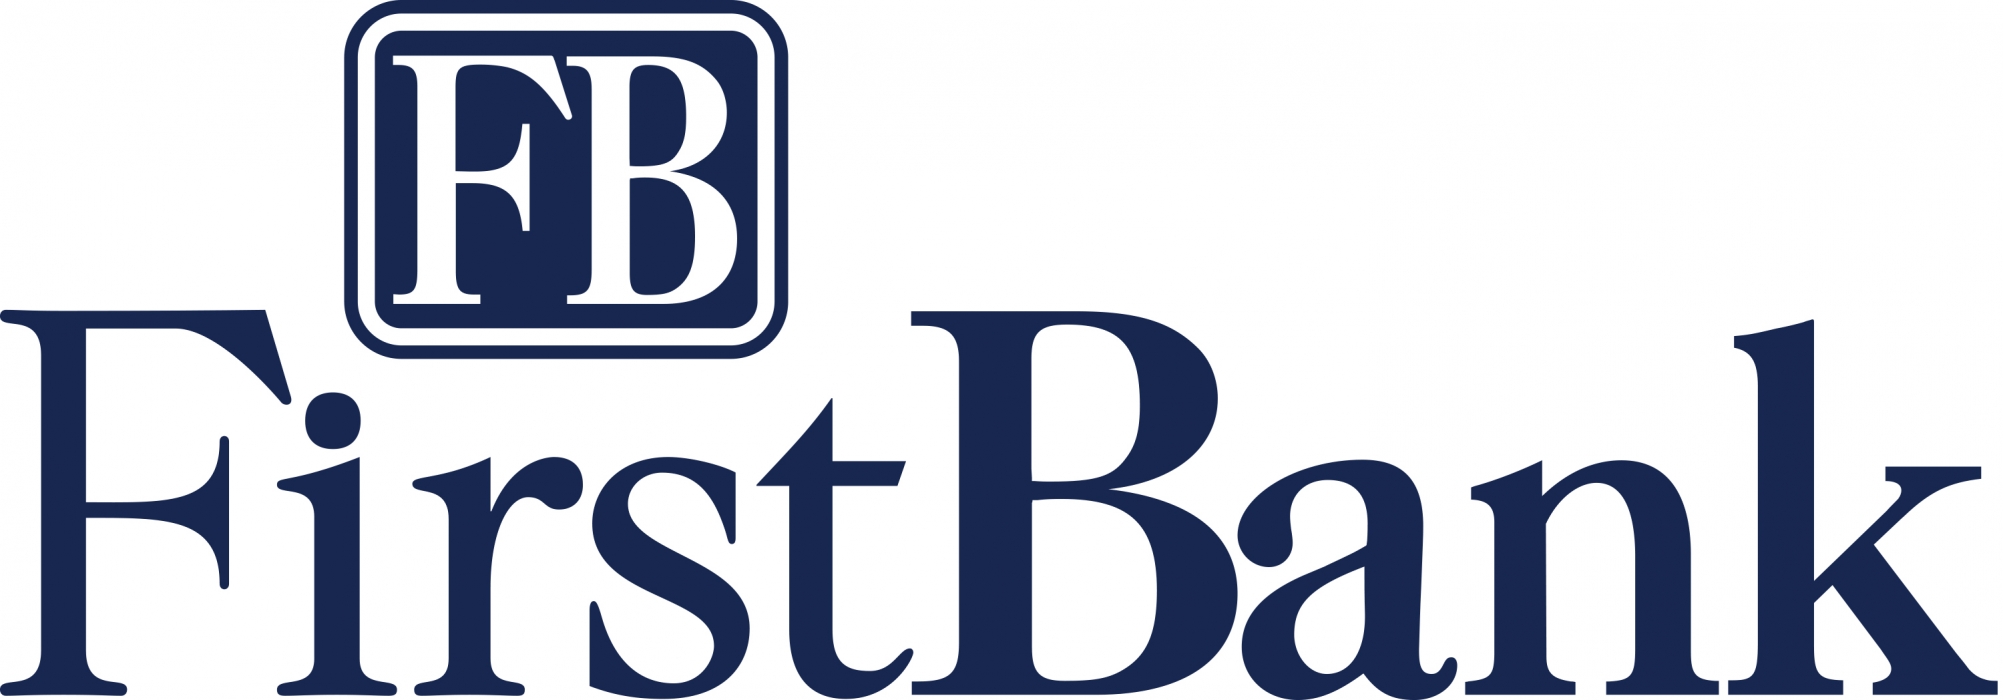 firstbank-logo.jpg